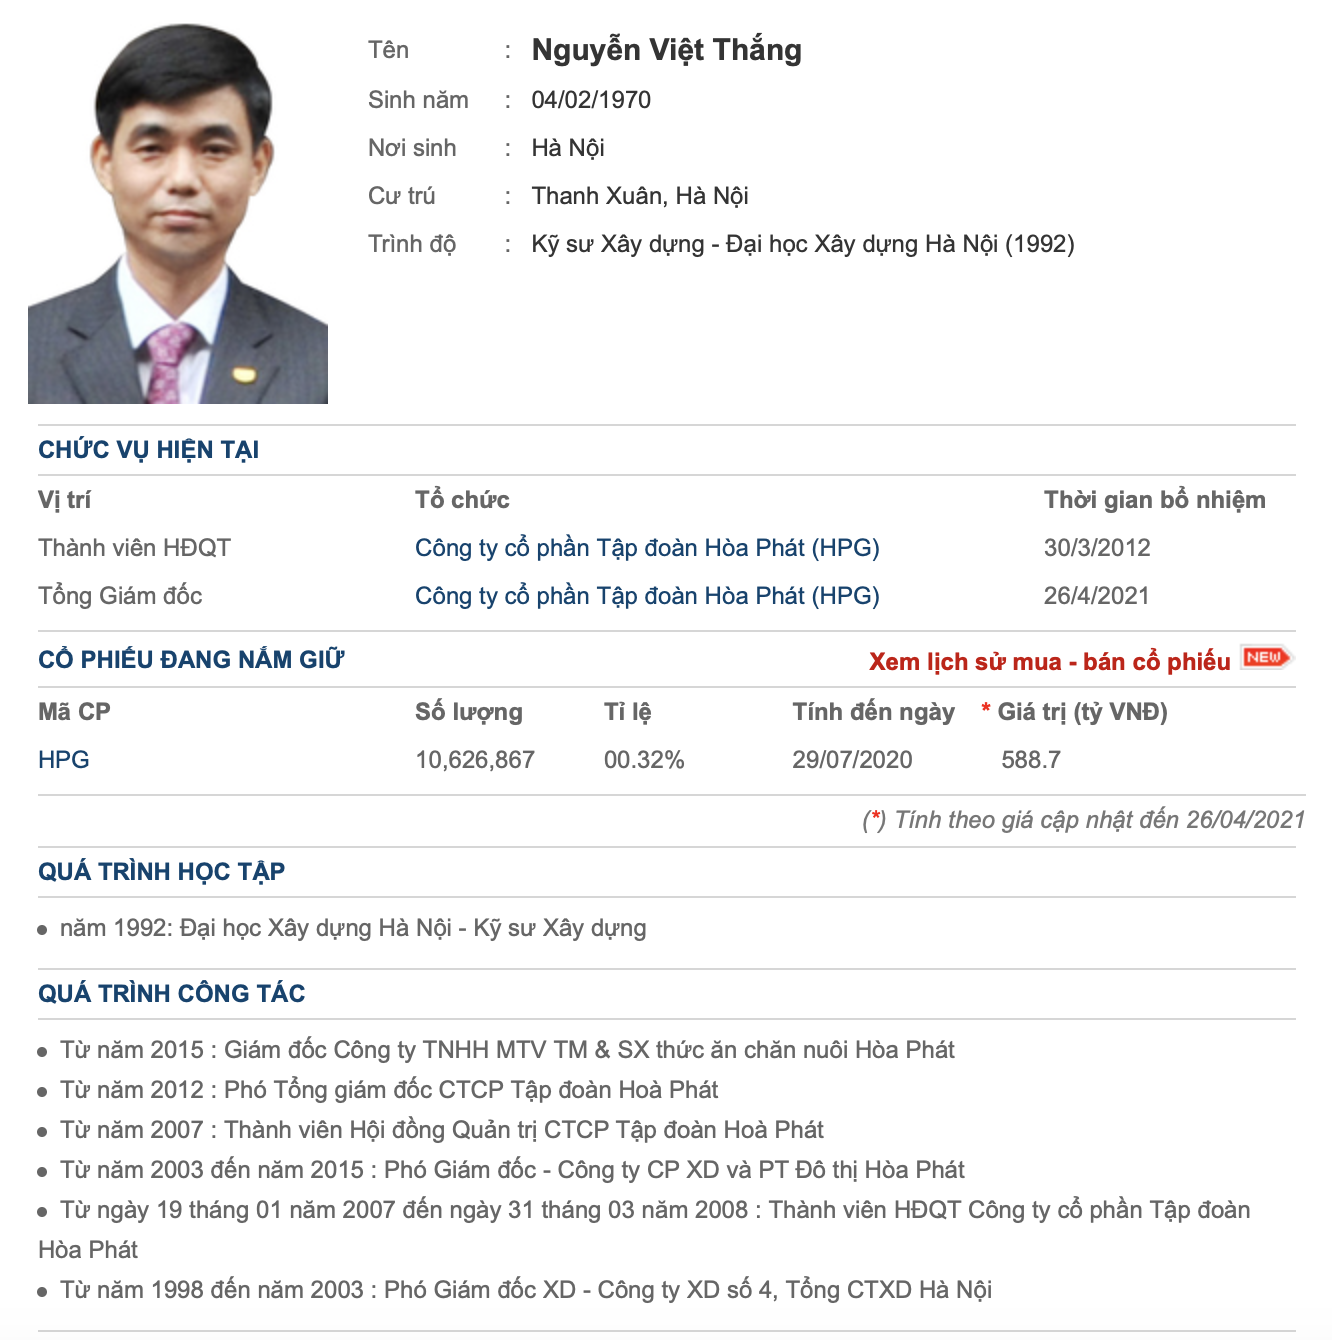 Ông Nguyễn Việt Thắng thay ông Trần Tuấn Dương làm Tổng giám đốc Hoà Phát: Thời điểm F2 chín muồi - Ảnh 2.